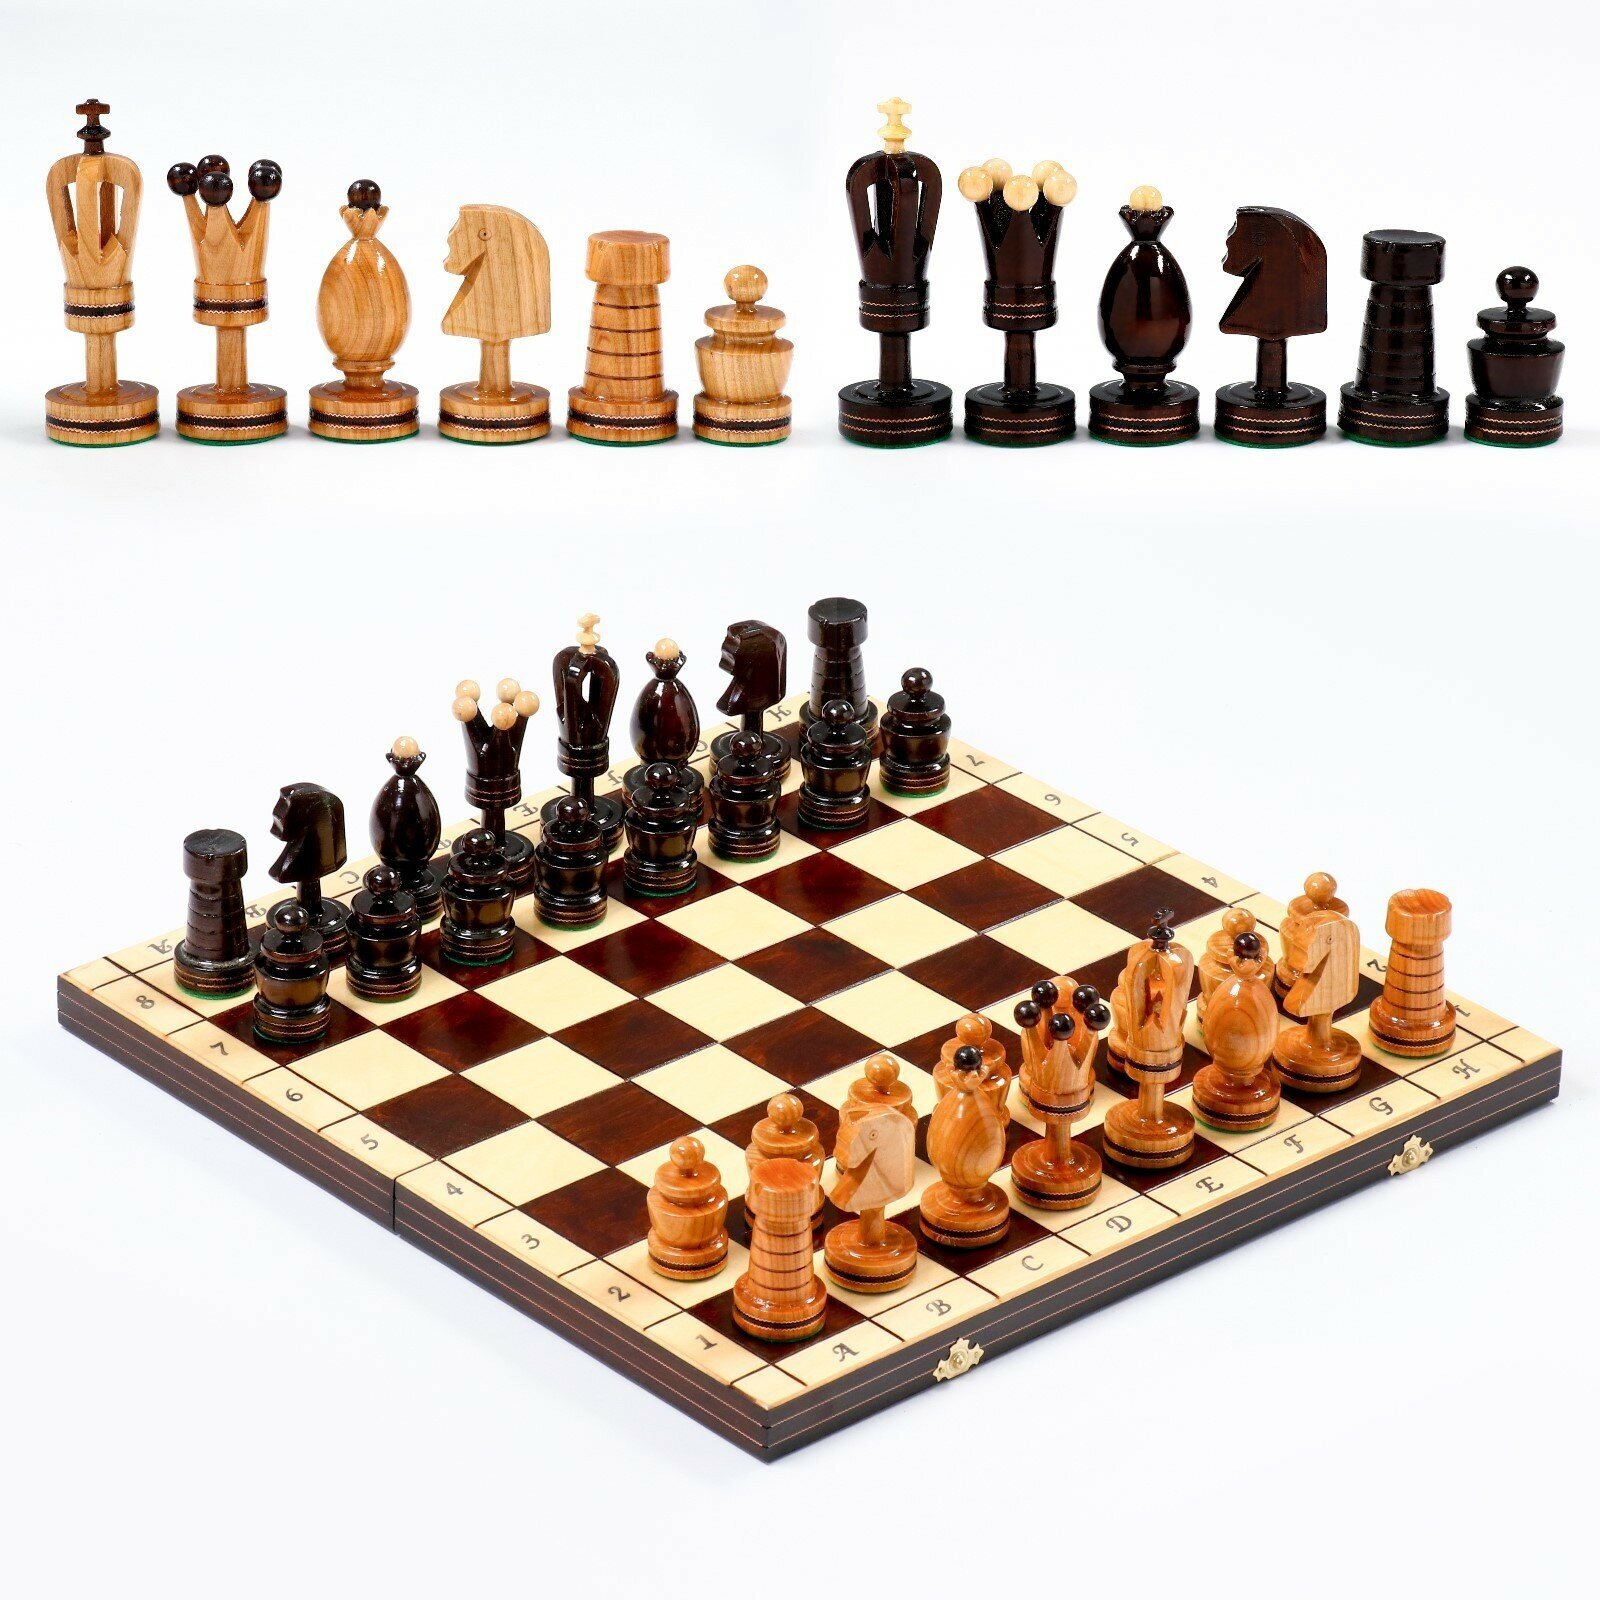 Шахматы польские "Королевские", 49 х 49 см, король h-12 см, пешка h-6 см